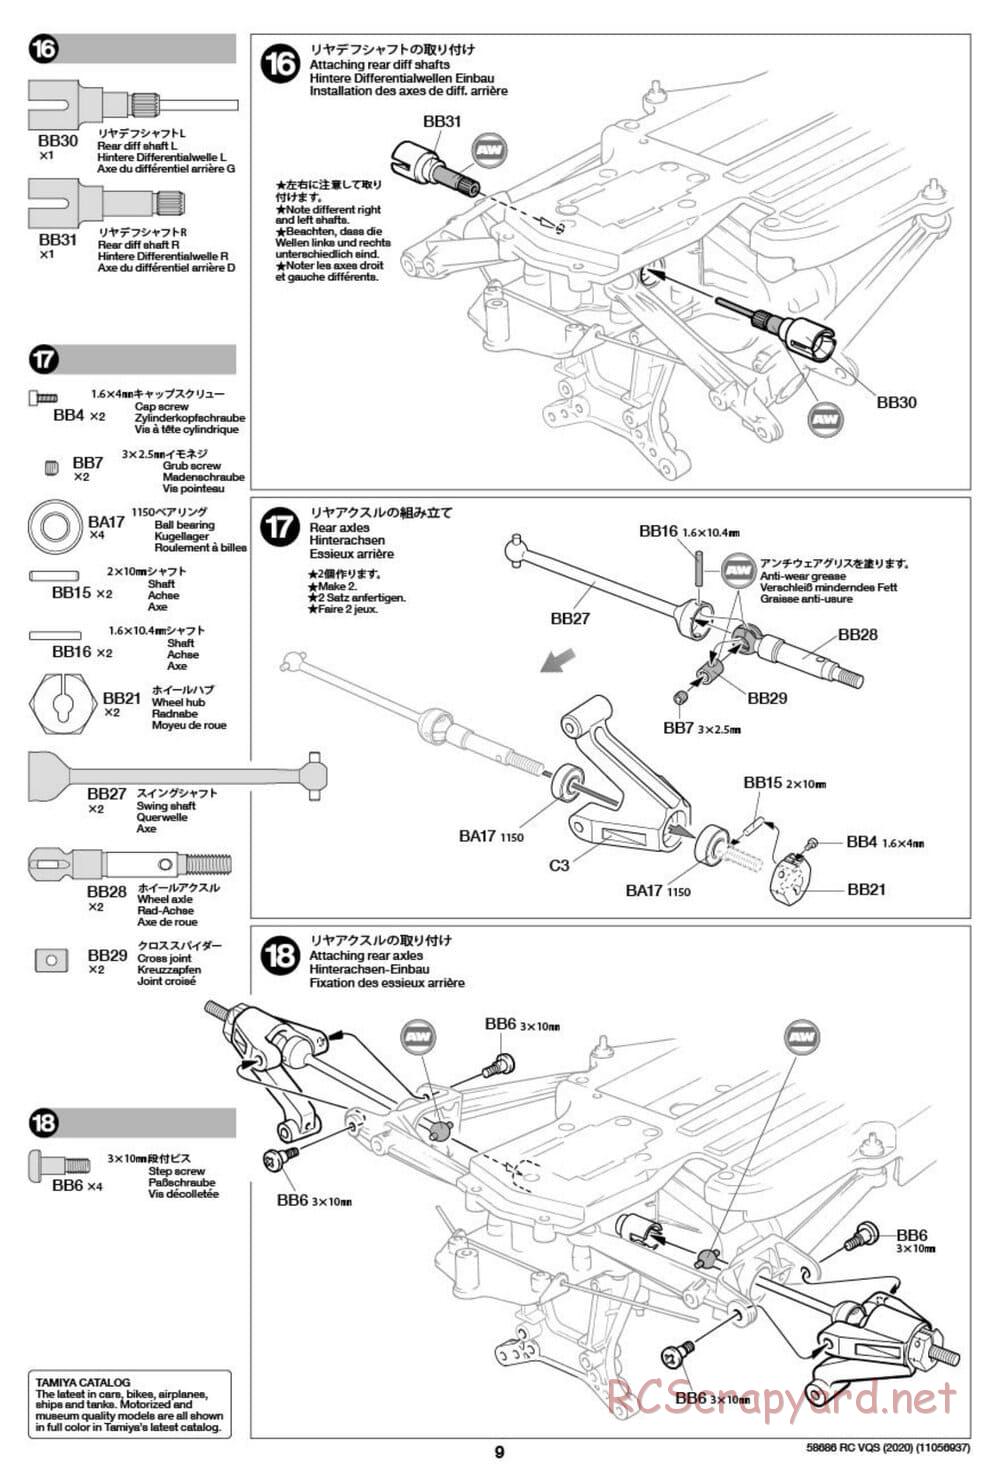 Tamiya - VQS (2020) - AV Chassis - Manual - Page 9